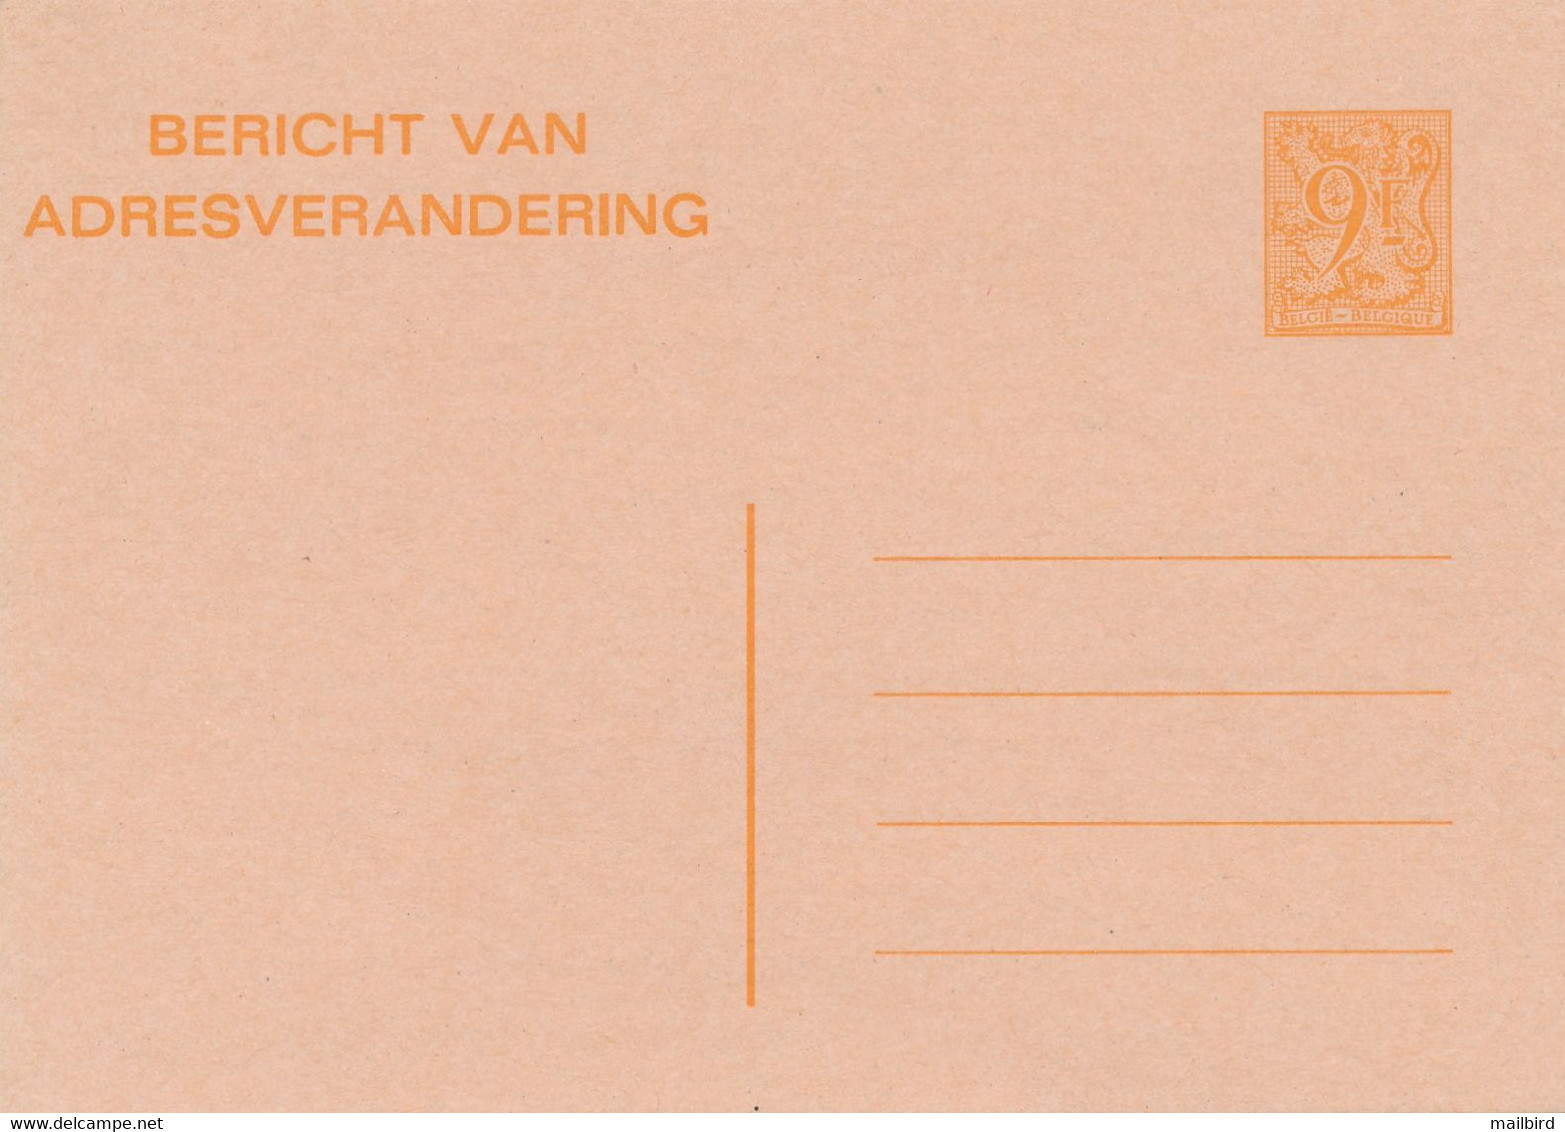 CA/AV 26 F- 9,00fr Orange/oranje -Avis De Changement D'Adresse/Bericht Van Adresverandering-1985- NEUF / NIEUW - Avis Changement Adresse